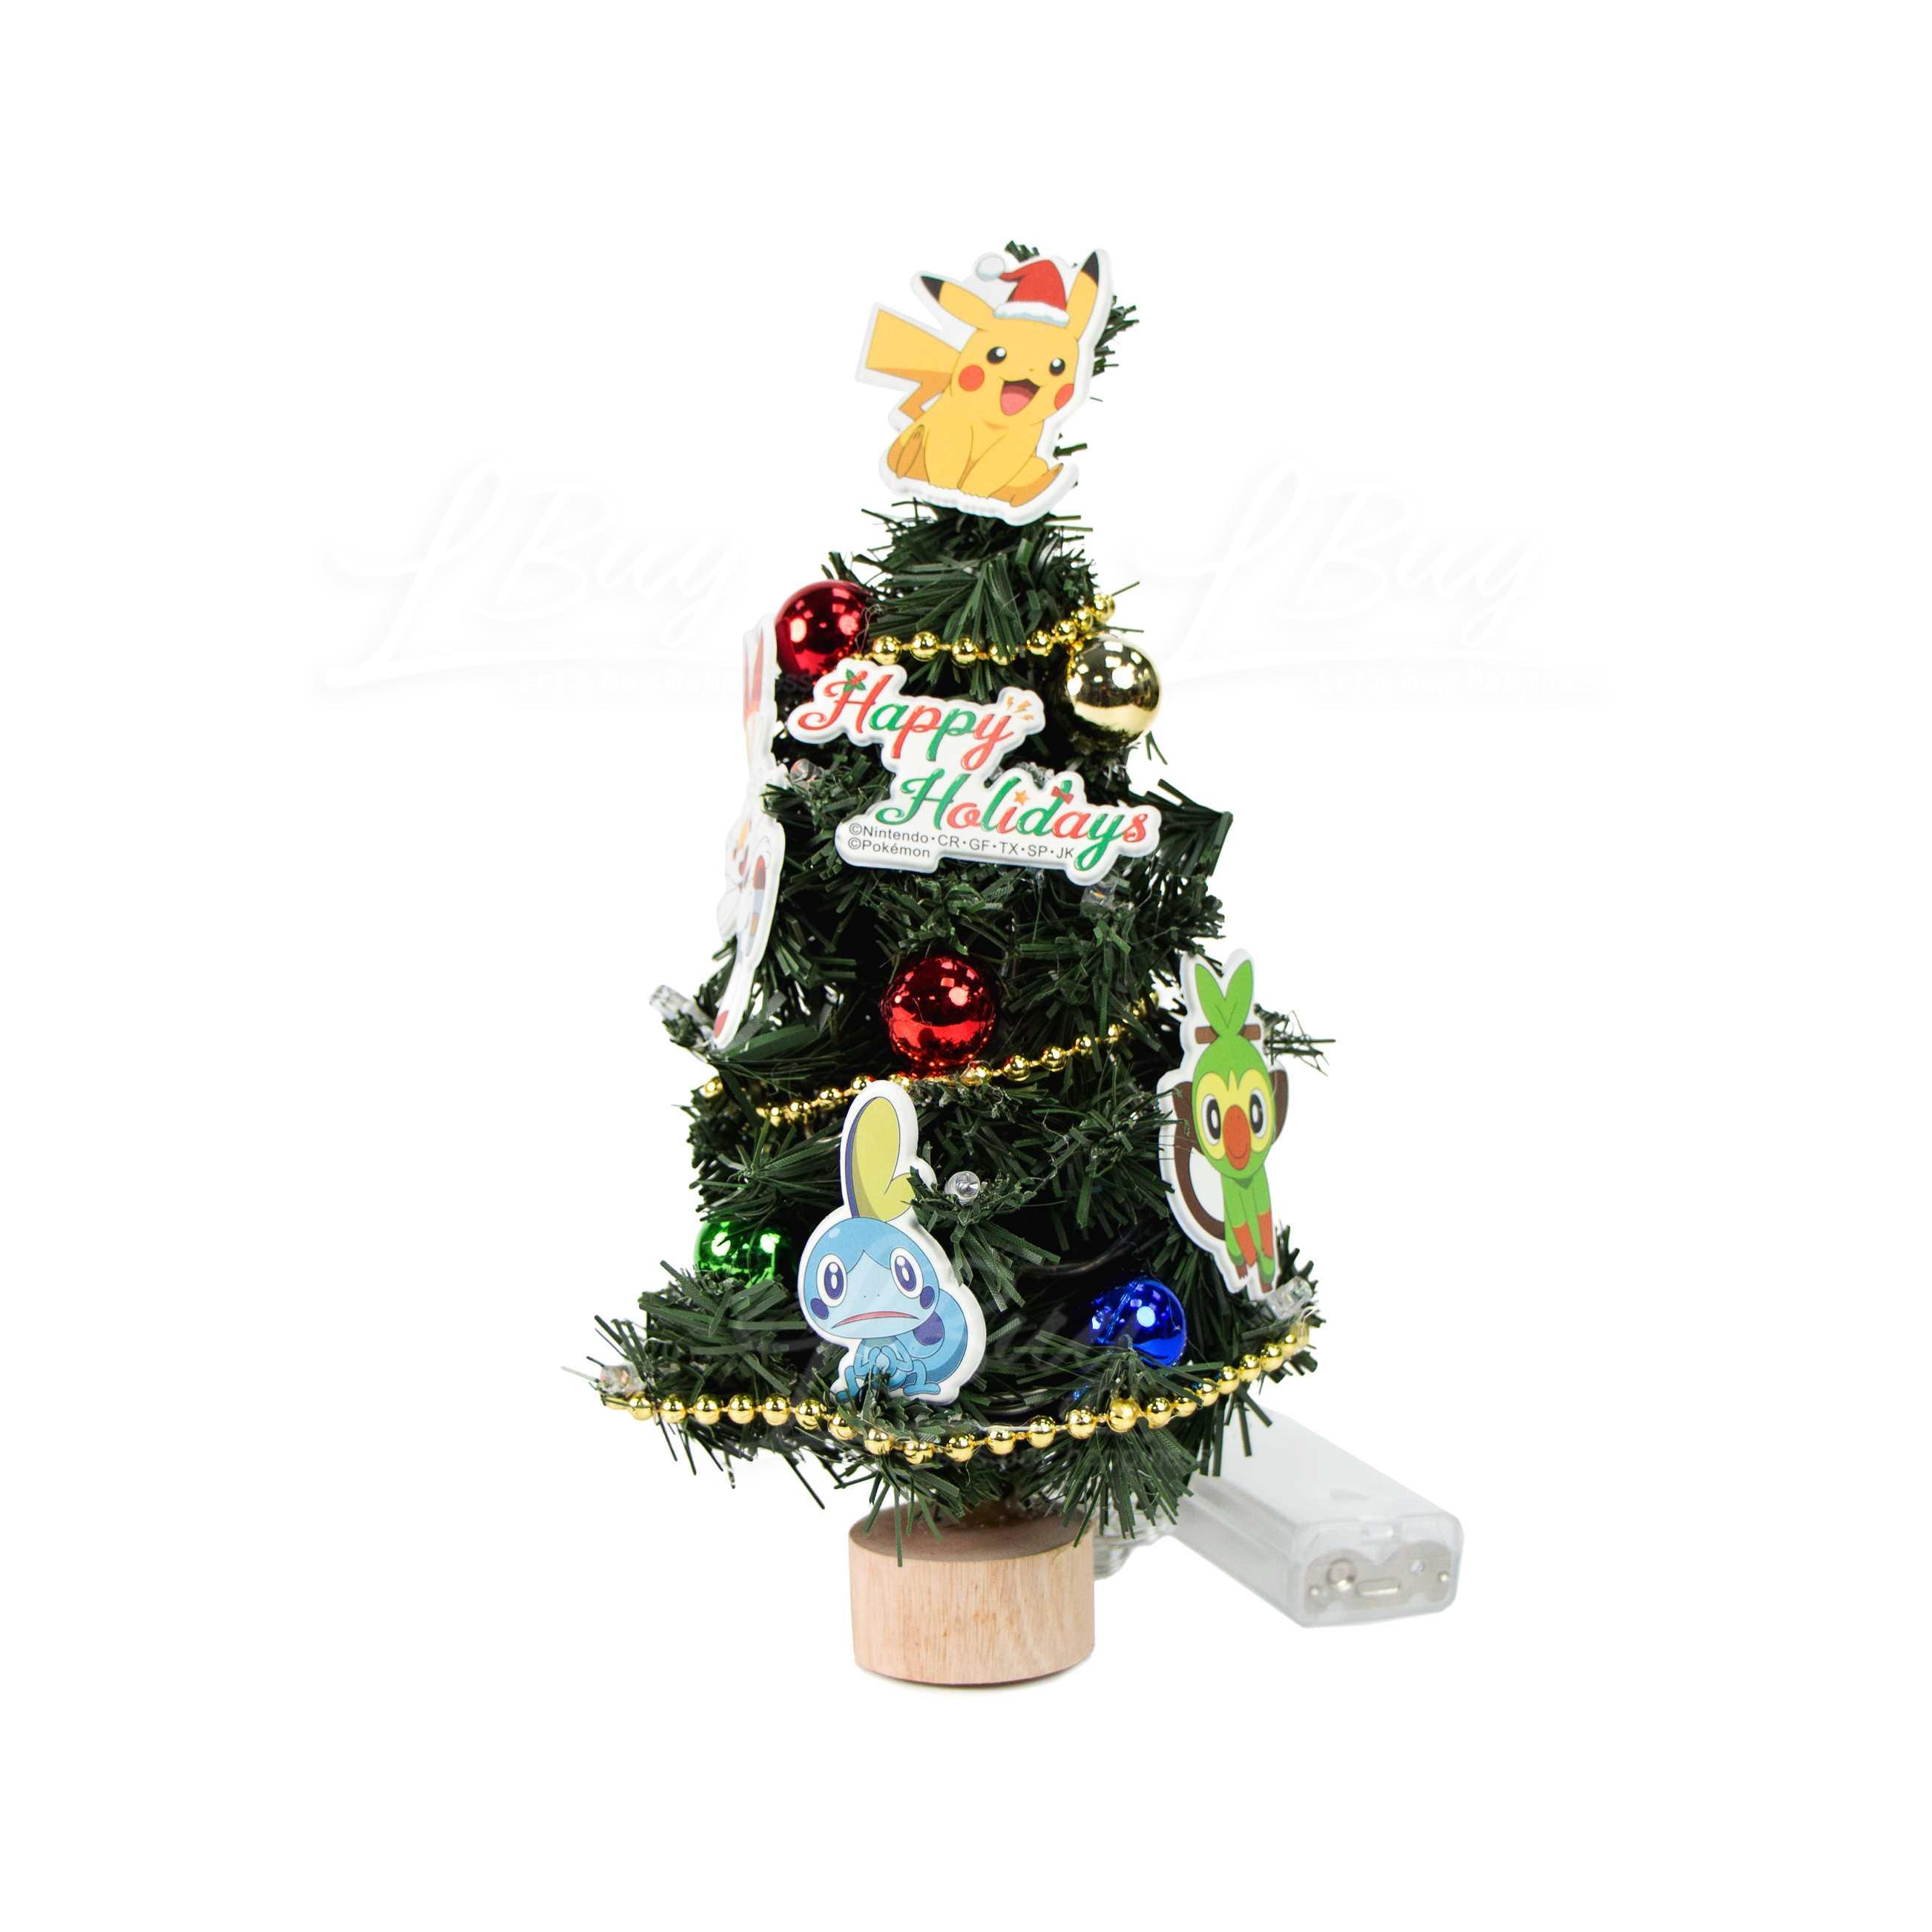 寶可夢 迷你聖誕樹(Christmas Decorations/Ornaments)